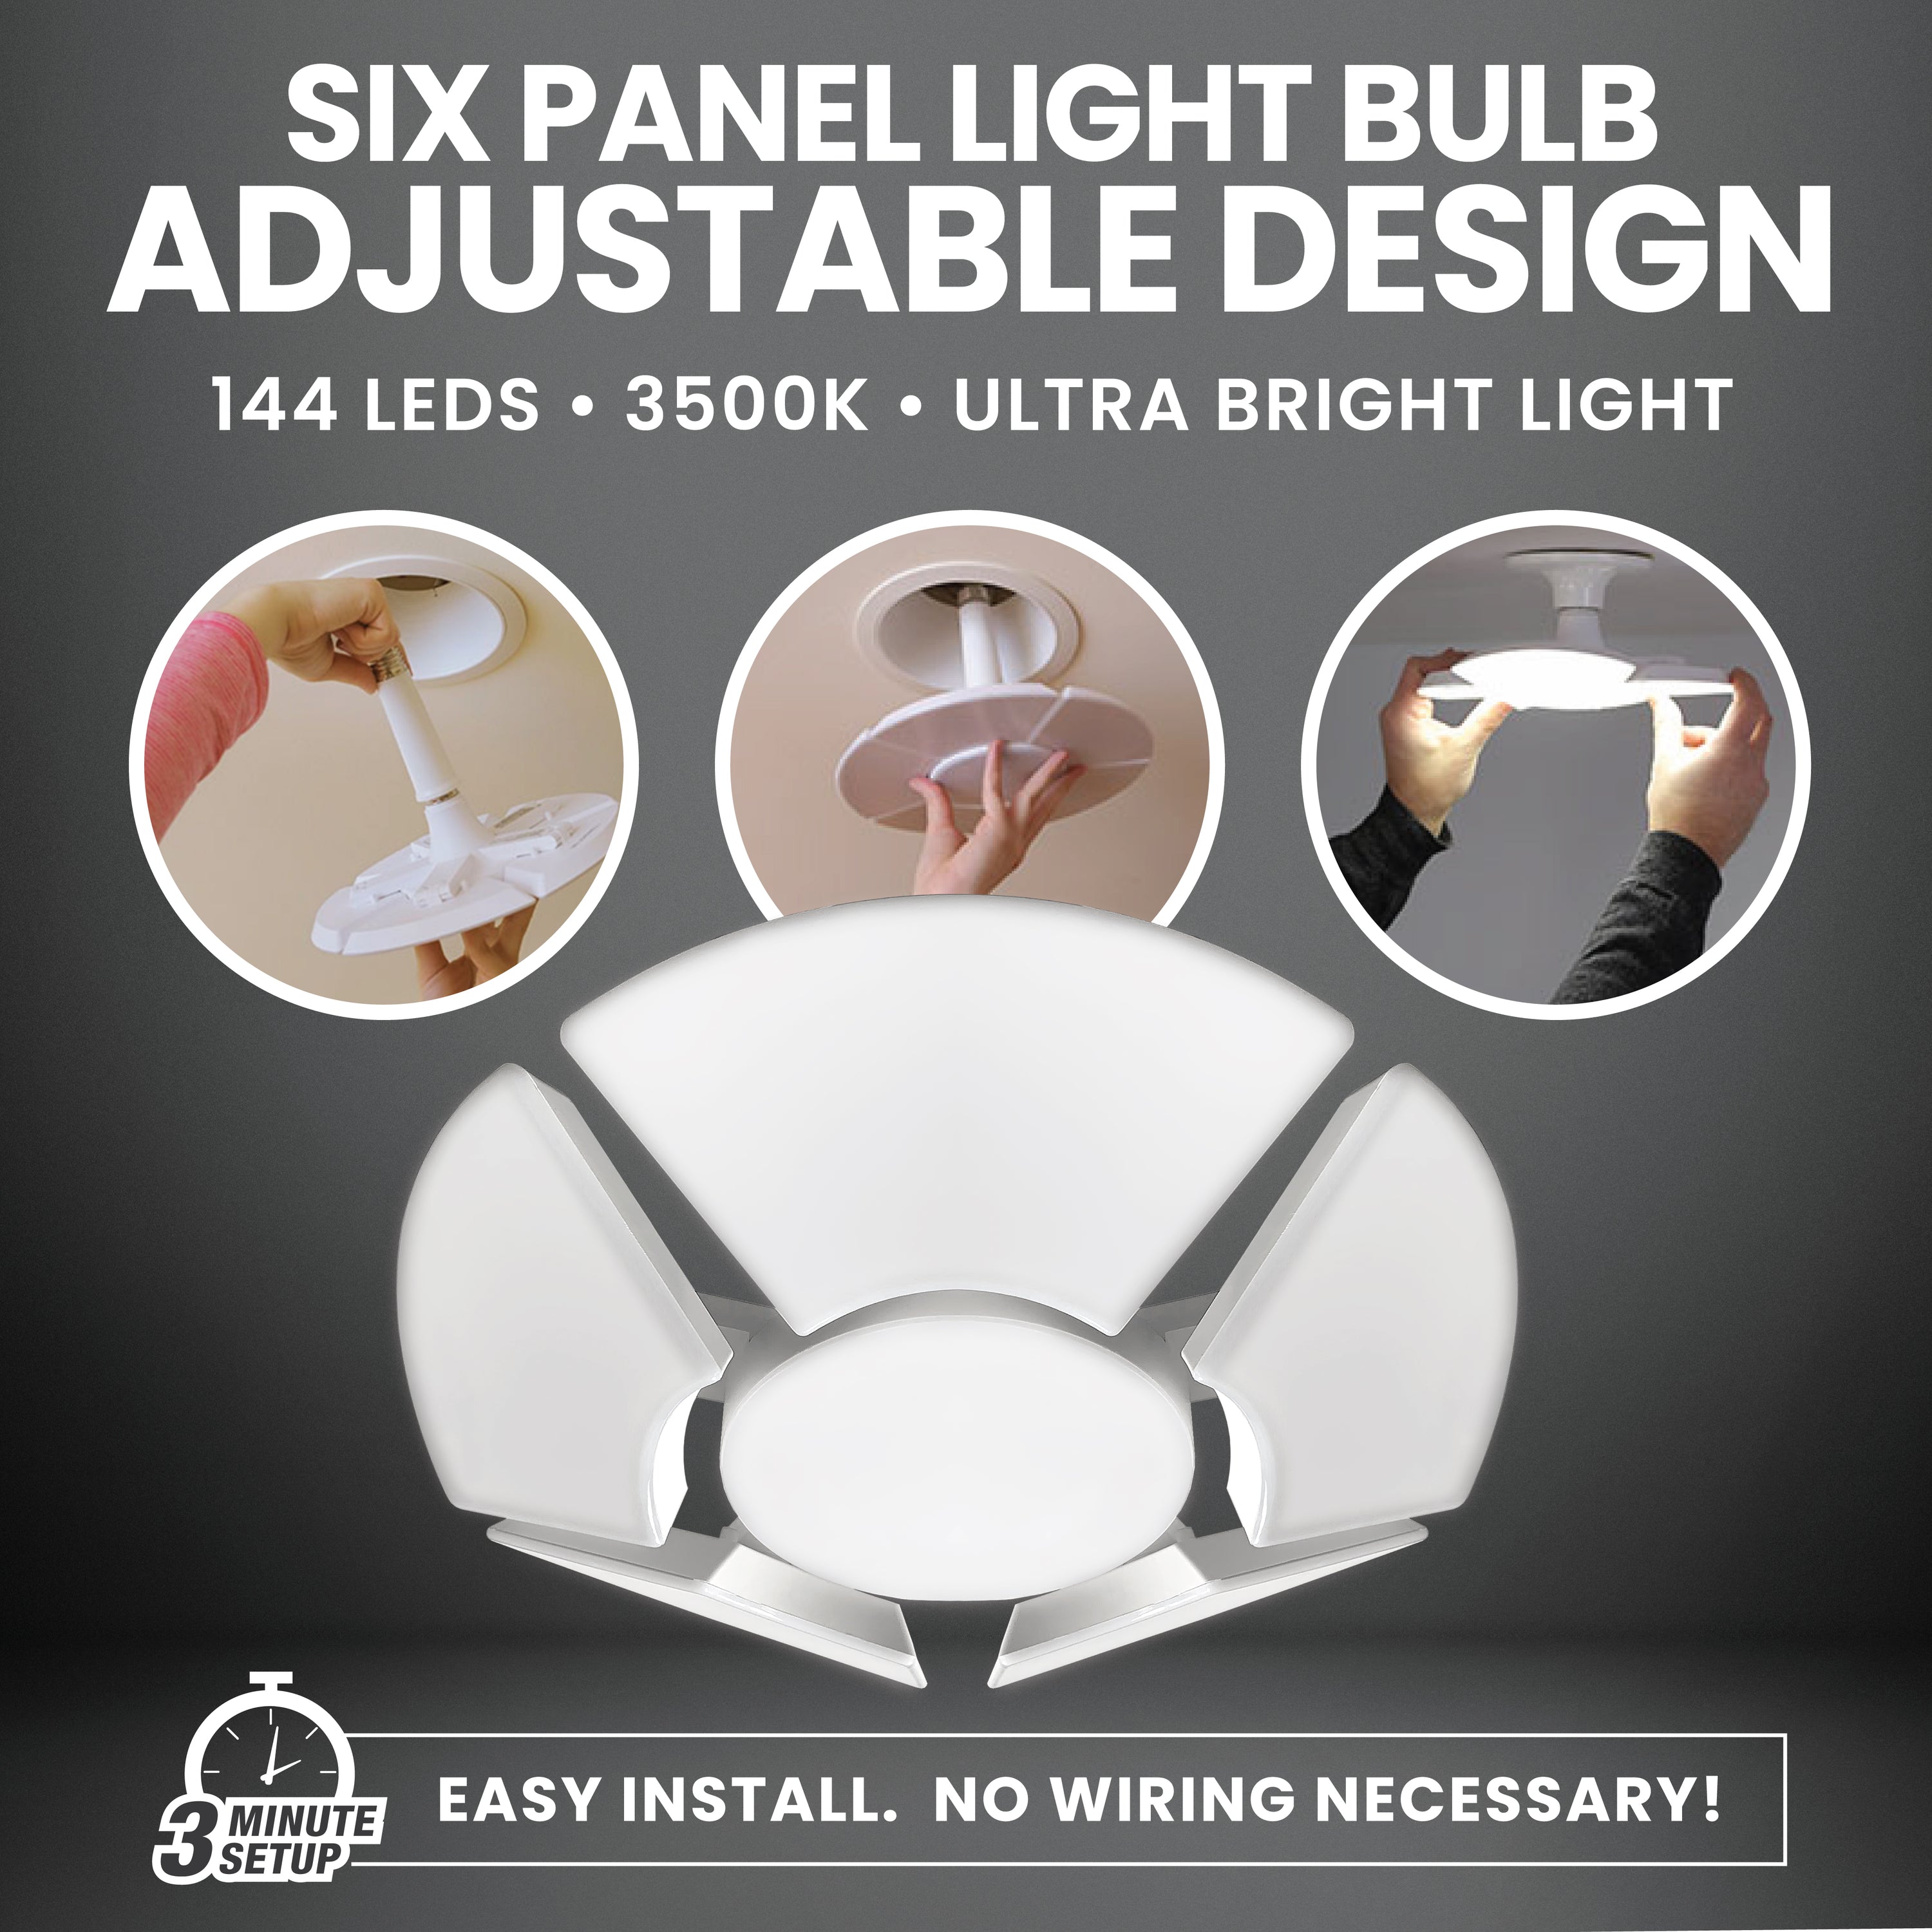 Hexbulb Adjustable 6-Panel Light Bulb - 3000 Lumens